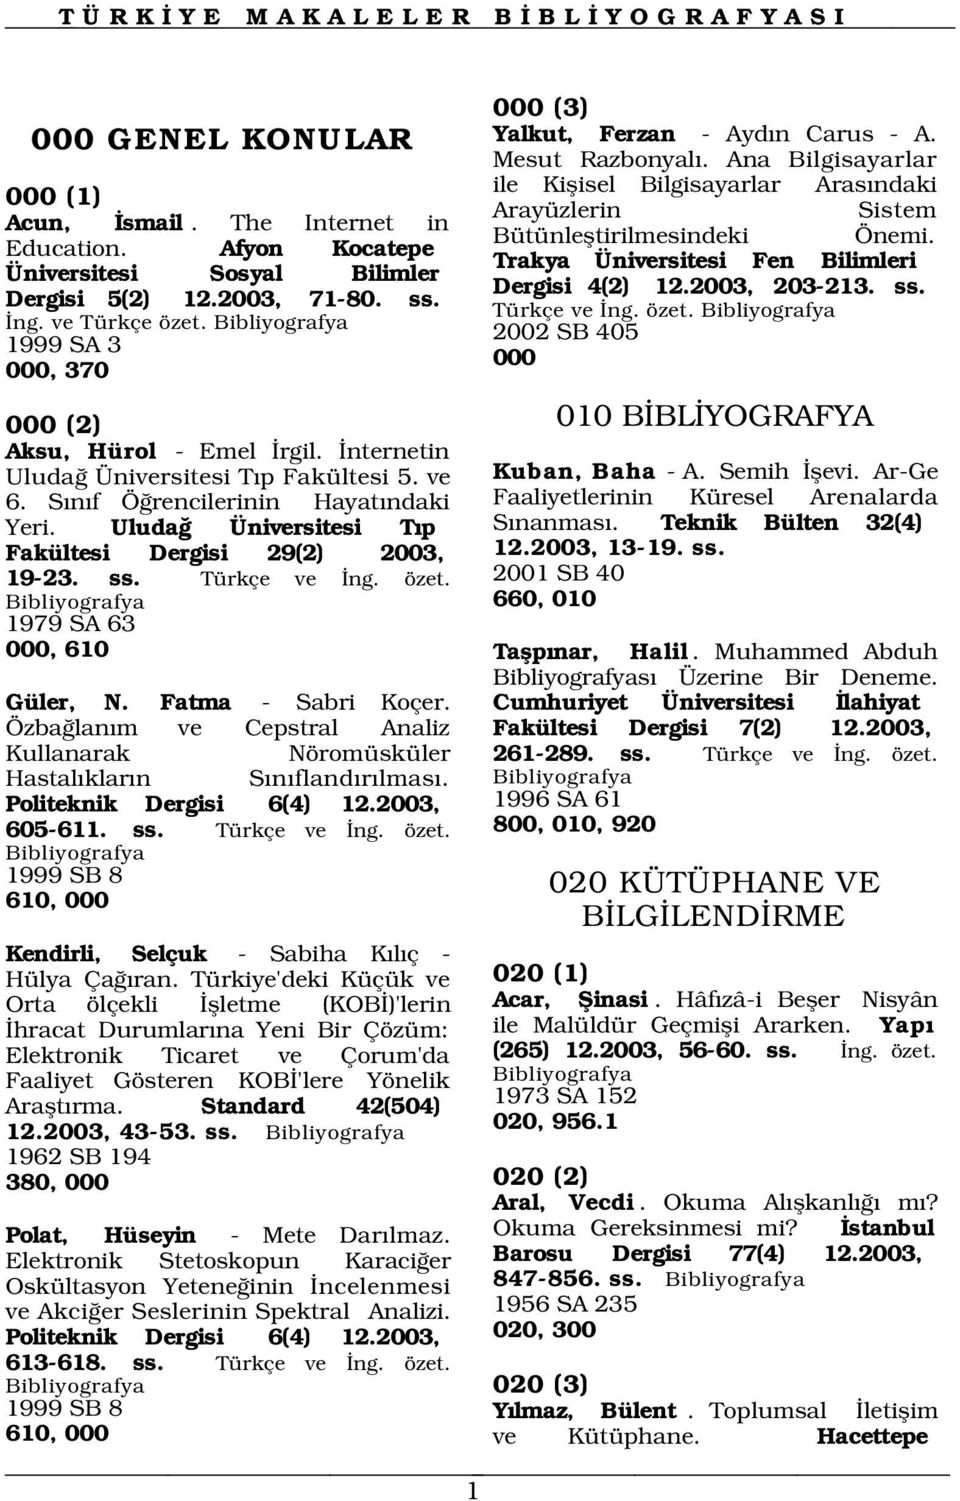 Uluda Üniversitesi T p Fakültesi Dergisi 29(2) 2003, 19-23. ss. Türkçe ve ng. özet. Mesut Razbonyal.